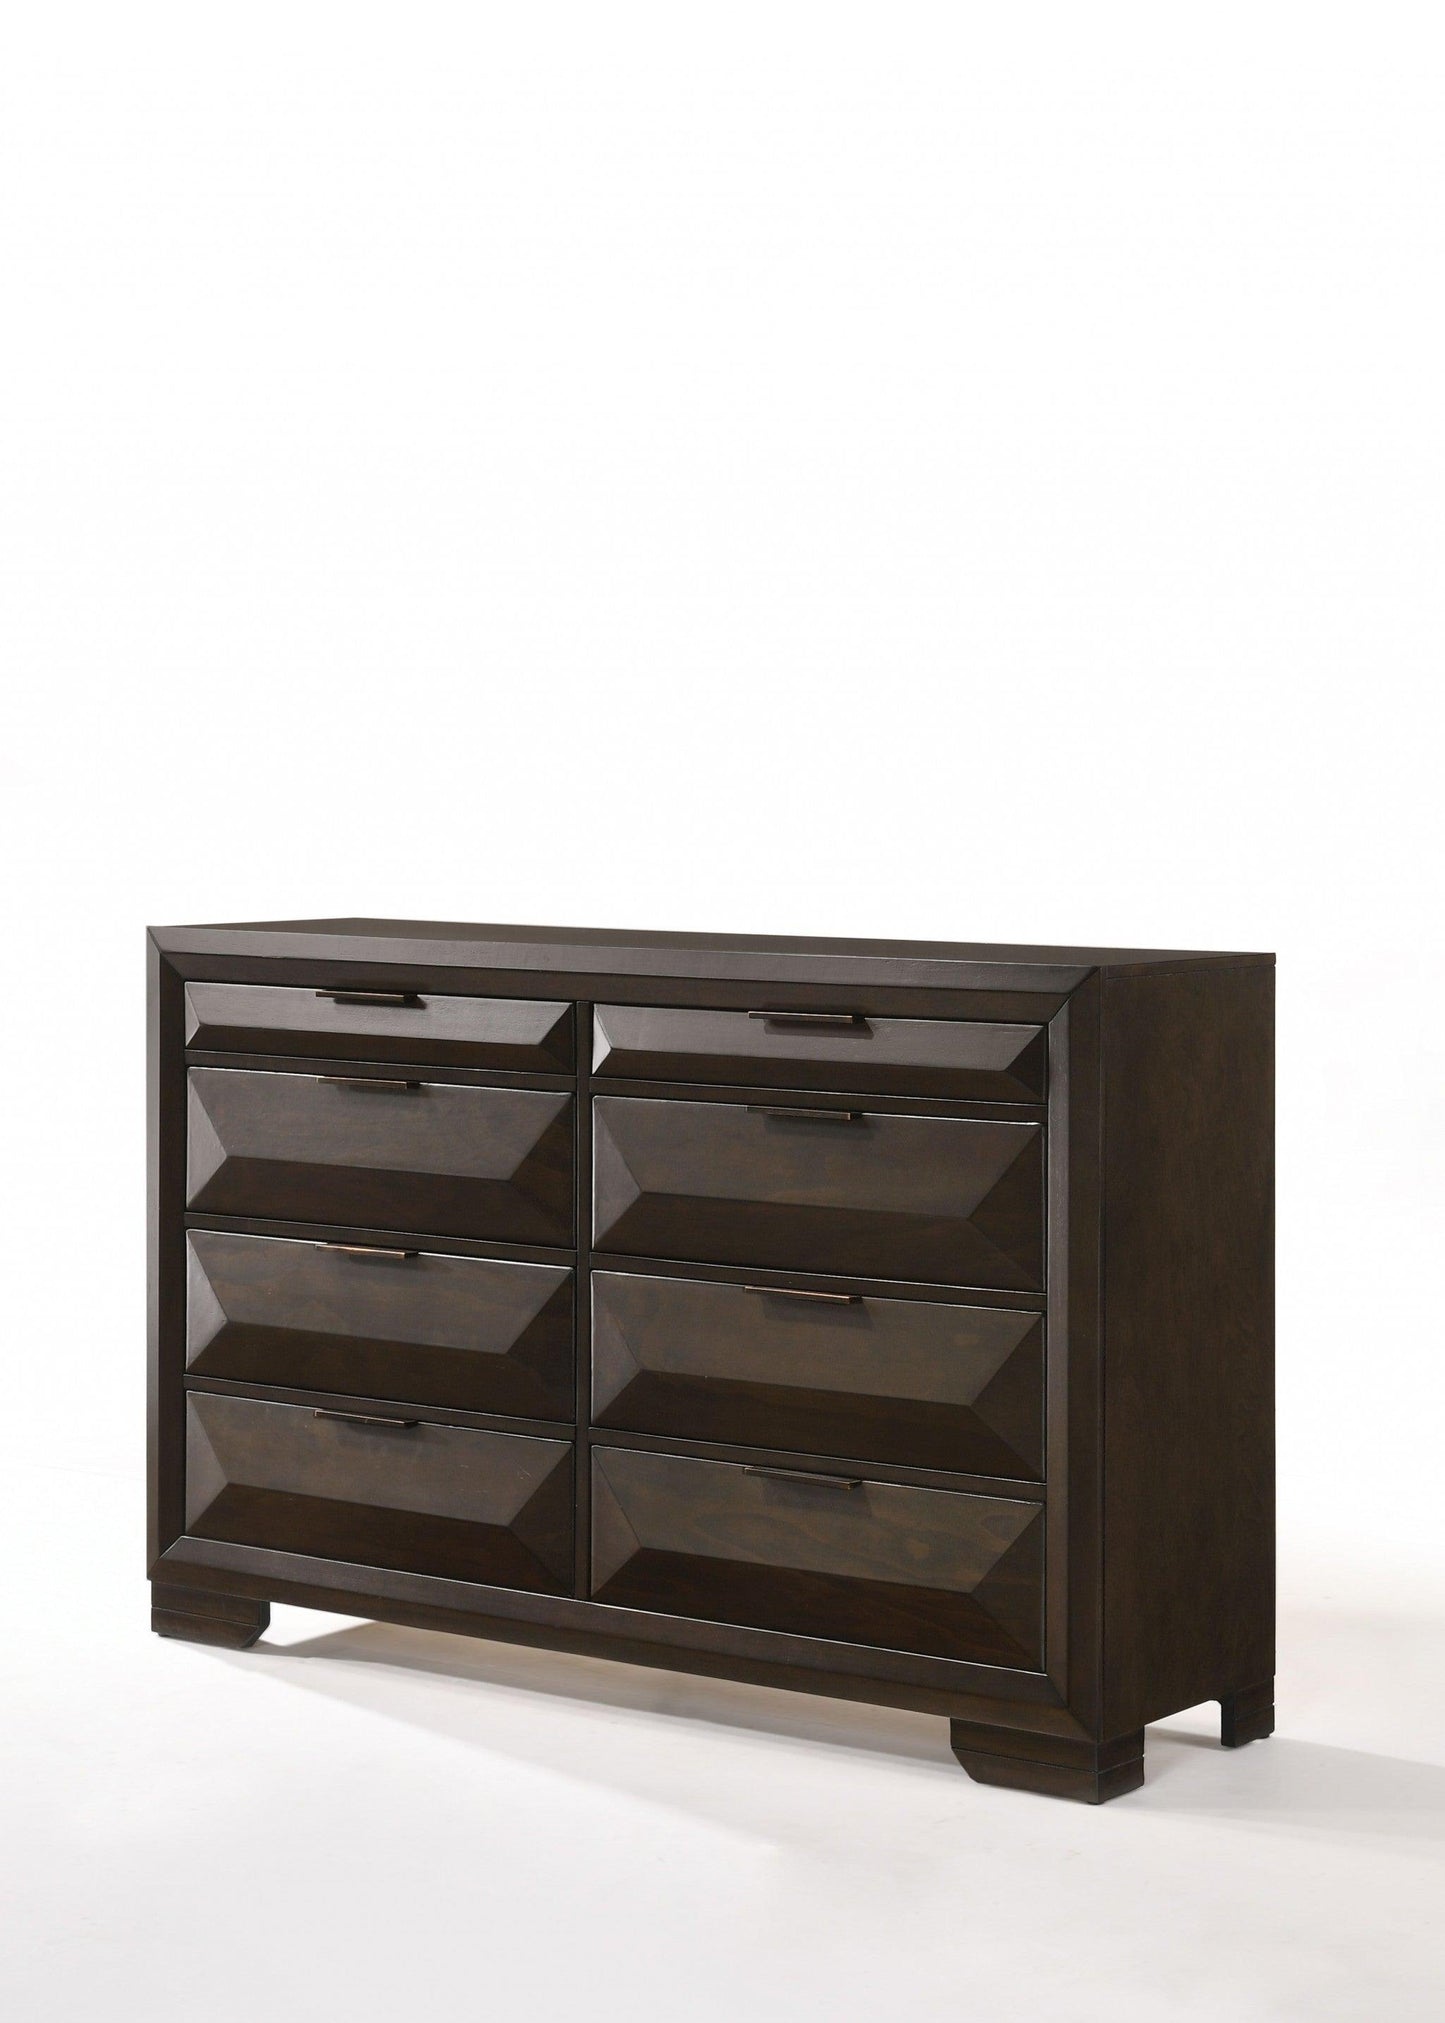 59" Espresso Solid Wood Standard Dresser/Chest - FurniFindUSA